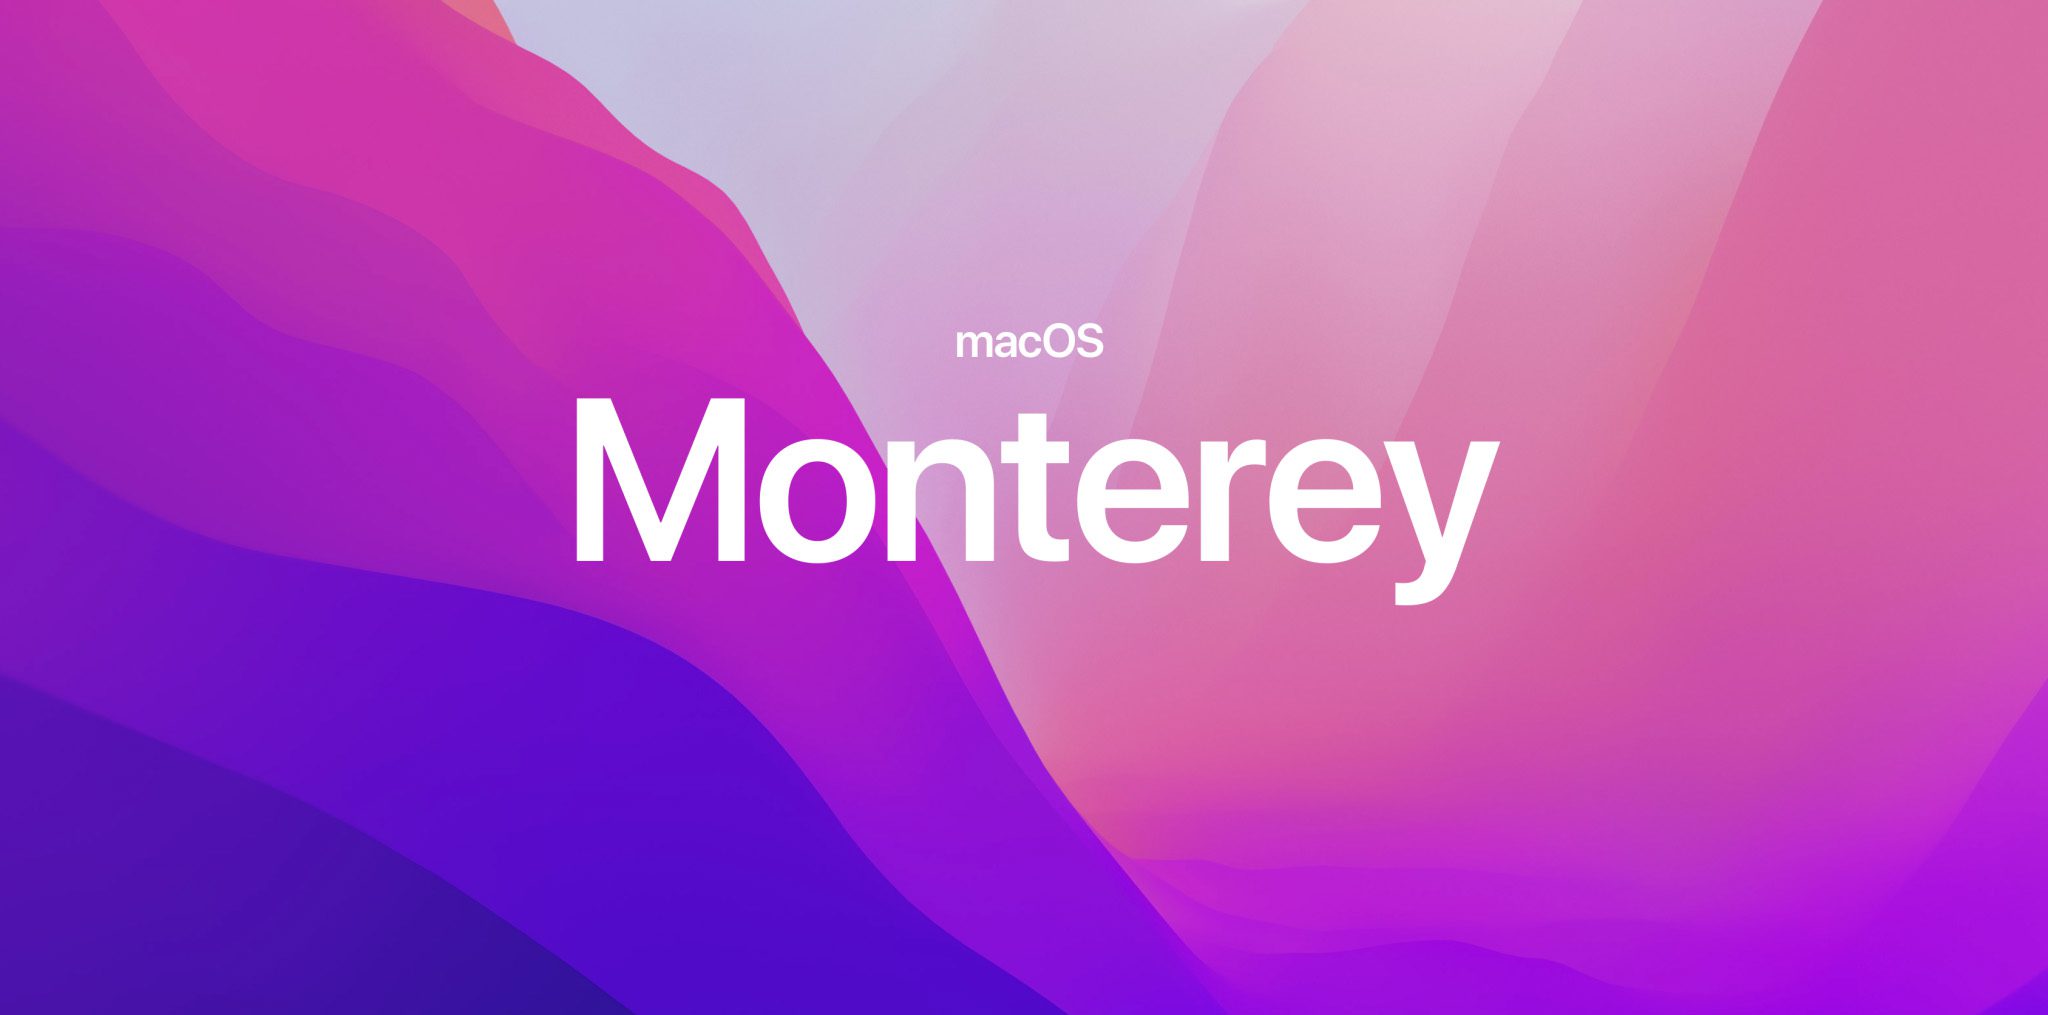 Auch ein buntes Betriebssystem: macOS Monterey – benannt nach der Monterey-Bucht in Kalifornien.